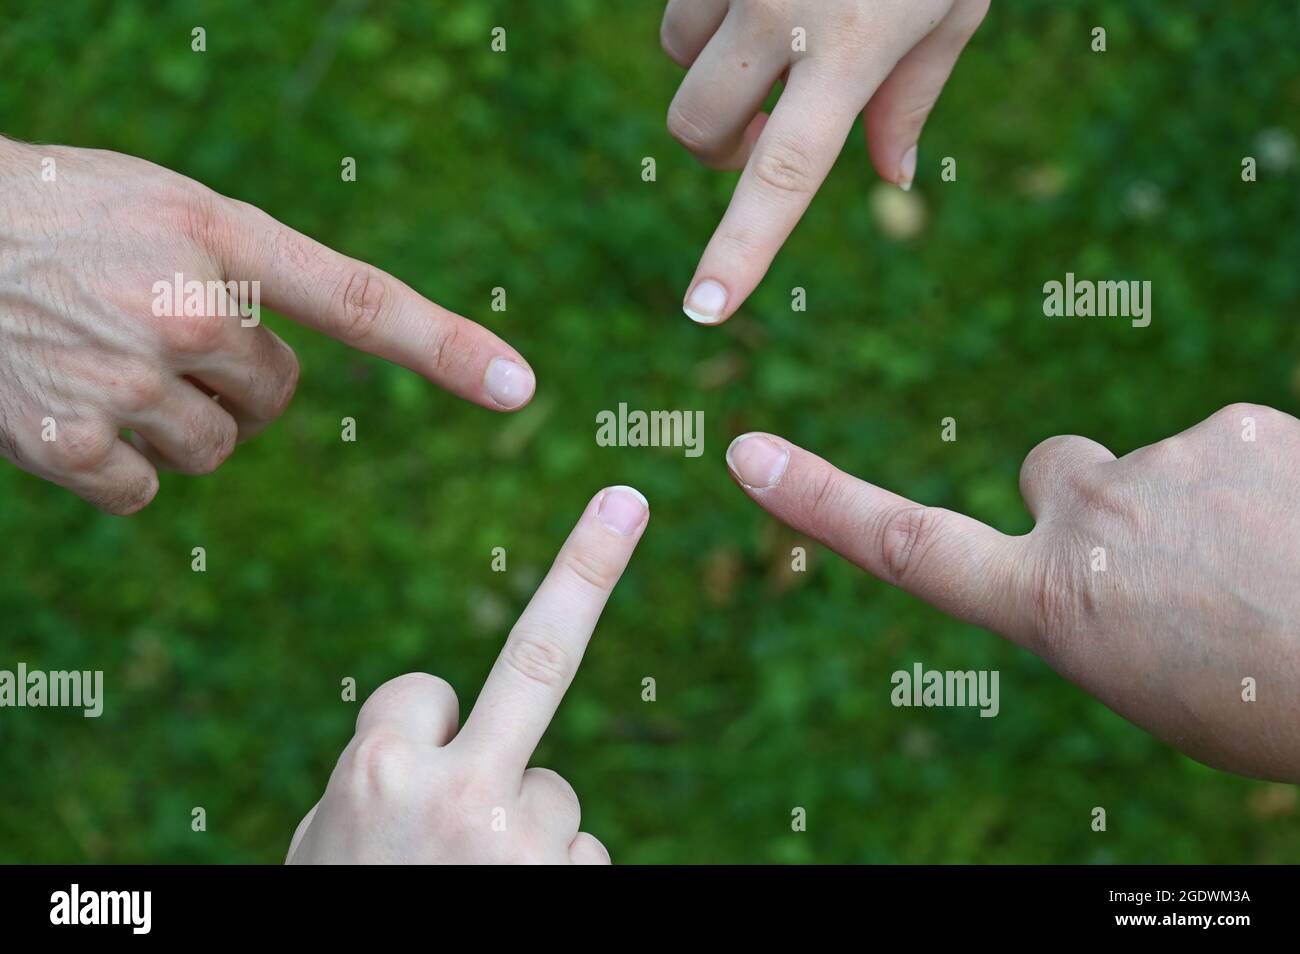 Les doigts étirés de quatre mains pointent l'un vers l'autre Banque D'Images